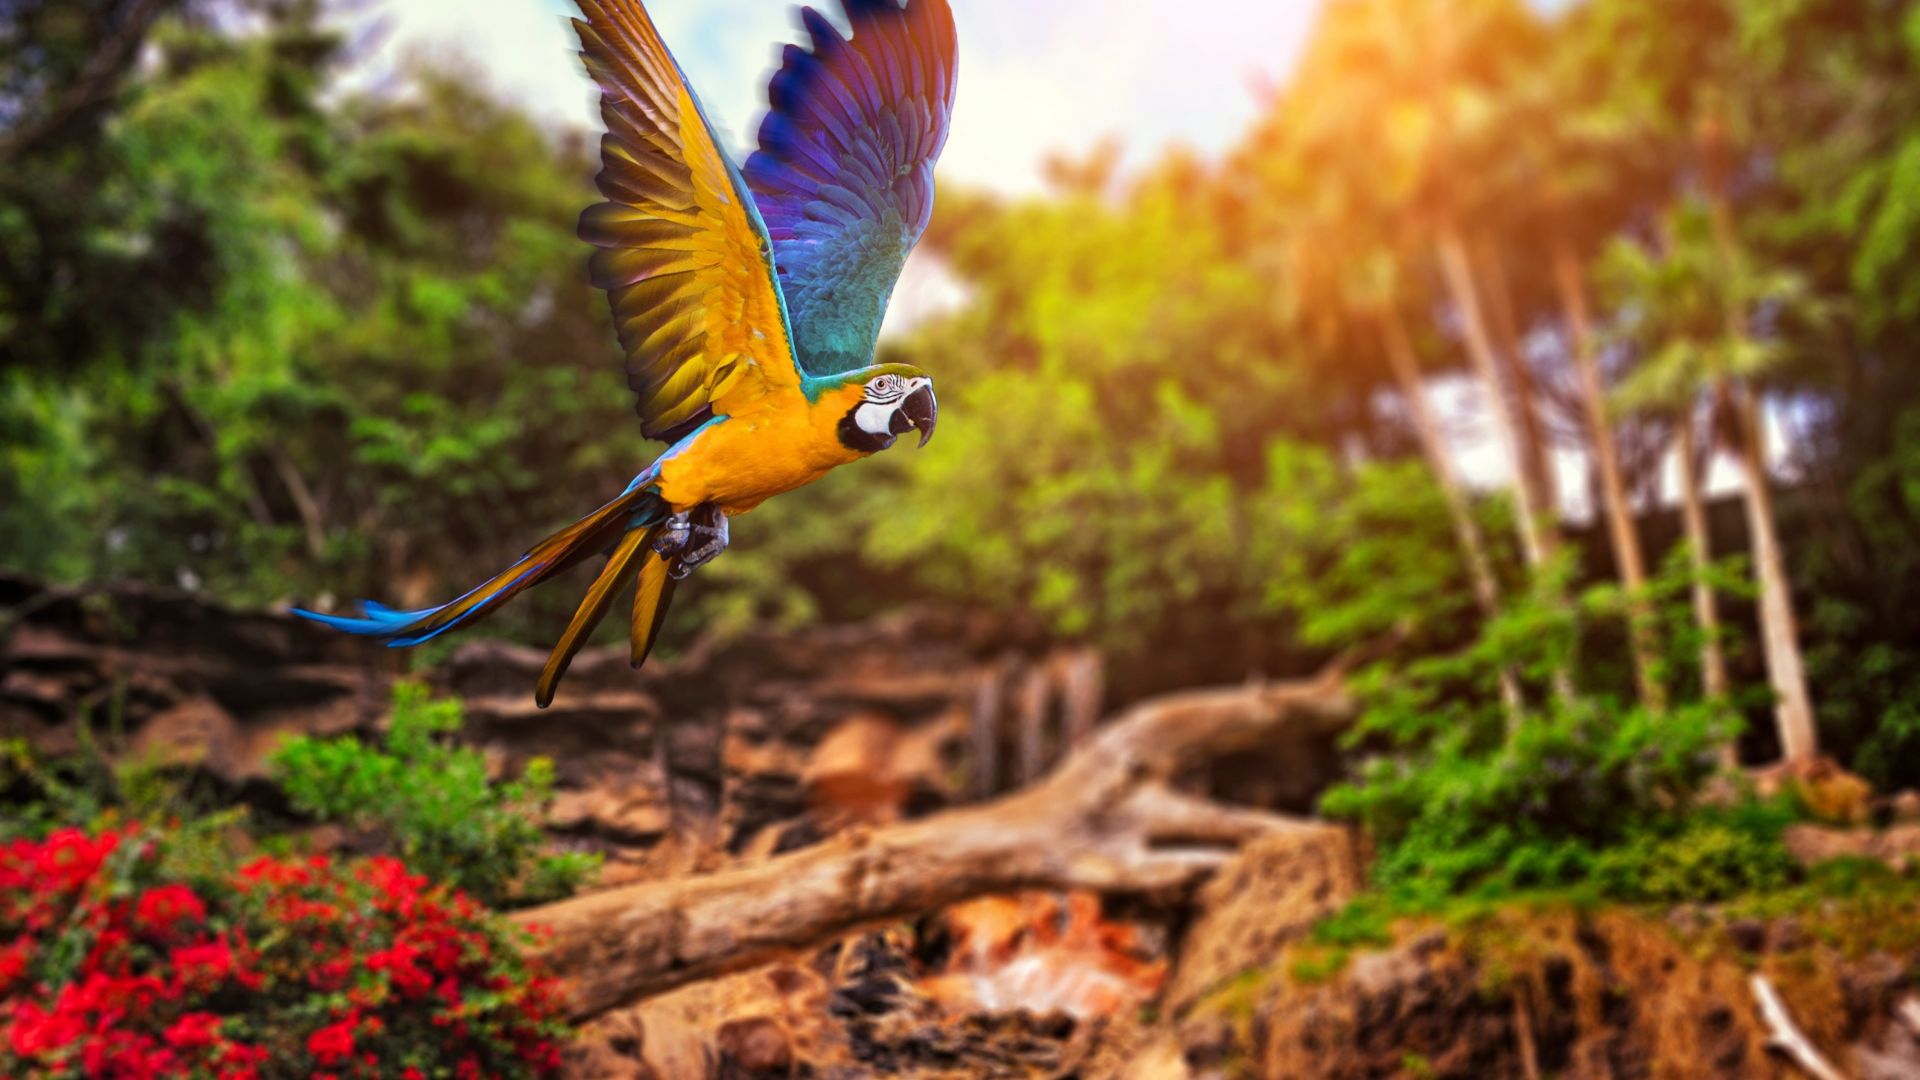 летящий попугай, желтый, синий, flying parrot, yellow, blue (horizontal)